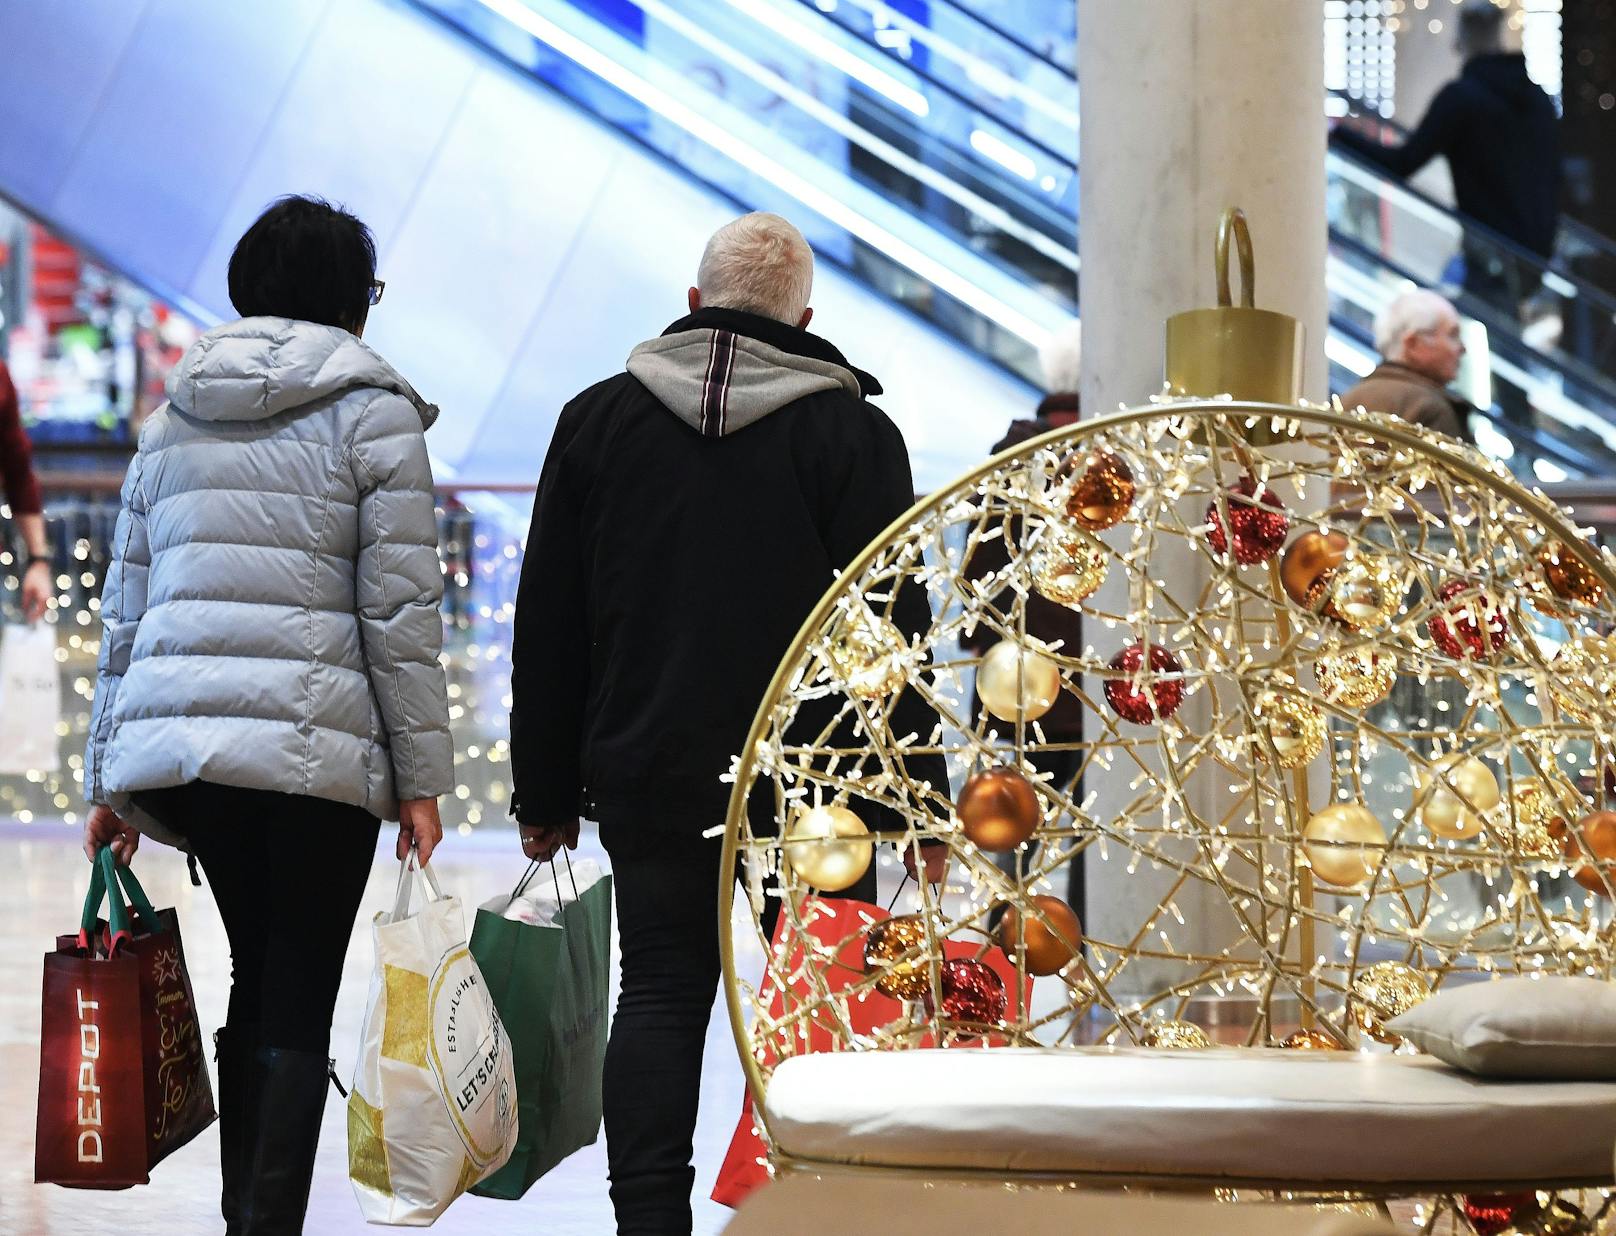 Auch hier droht Streik: Ausgerechnet am Einkaufs-Wochenende vor Weihnachten könnte der Handel zu bleiben.